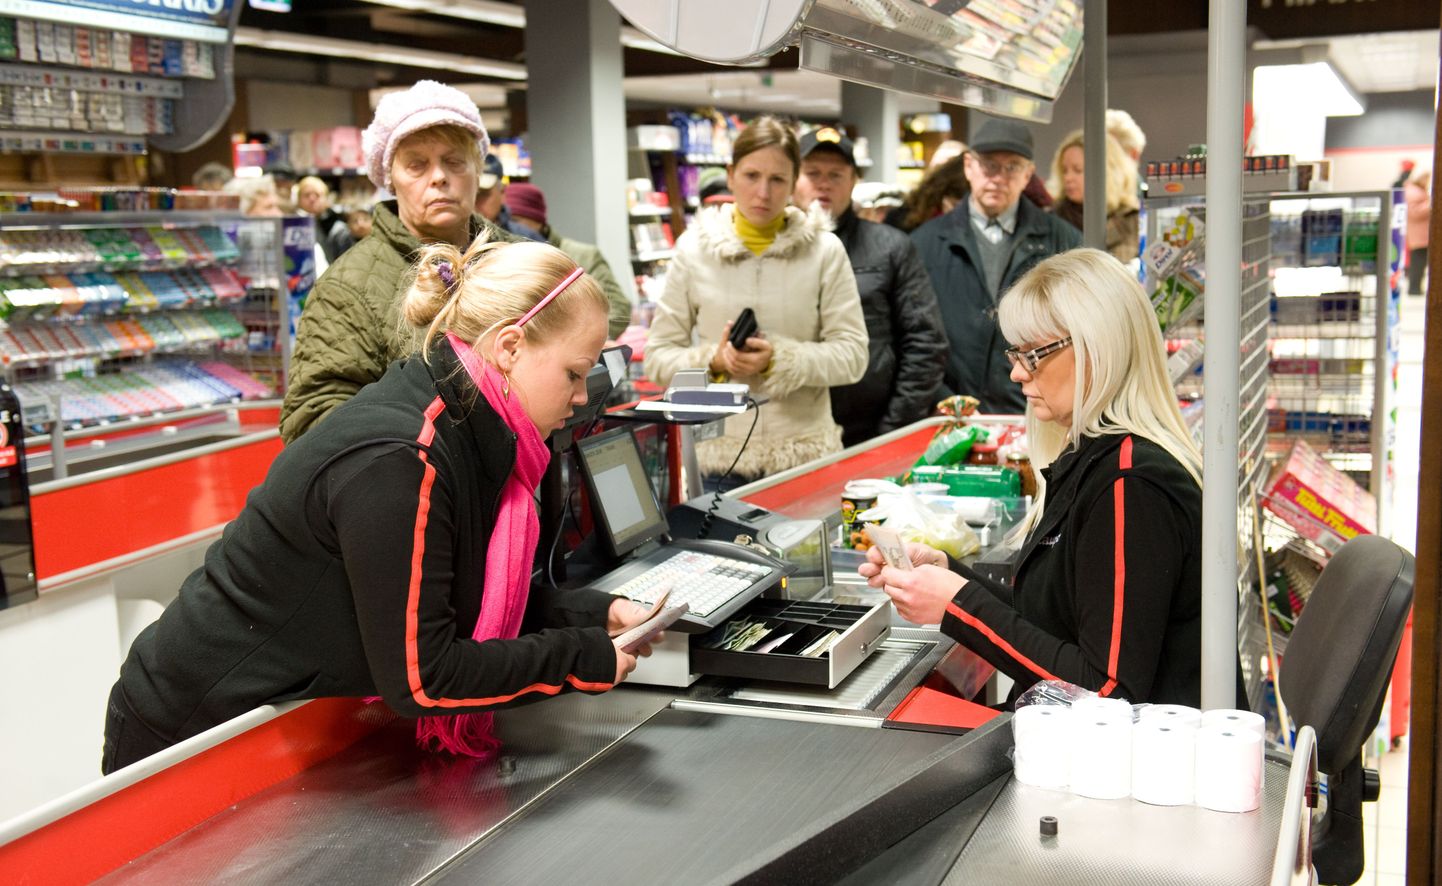 Statistikaameti uuringu järgi kulub Eesti inimestel kõige rohkem raha toidule ja eluasemele. Pildil kliendid toidupoes.